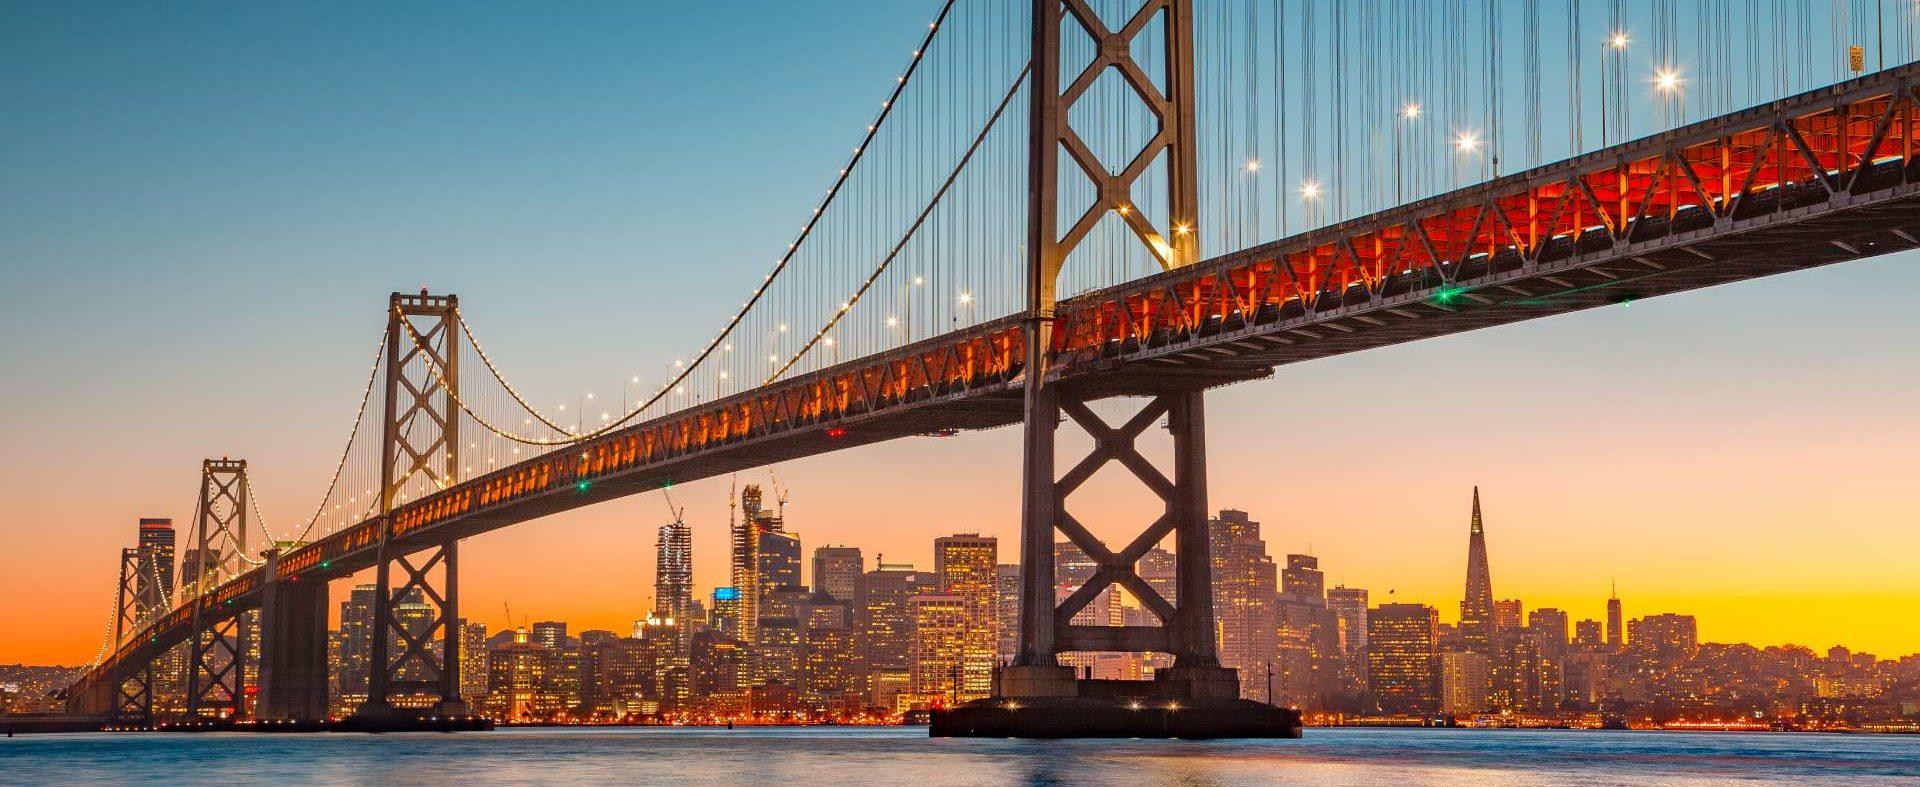 San Francisco Skyline mit Oakland Bay Bridge bei Sonnenuntergang, Kalifornien, USA